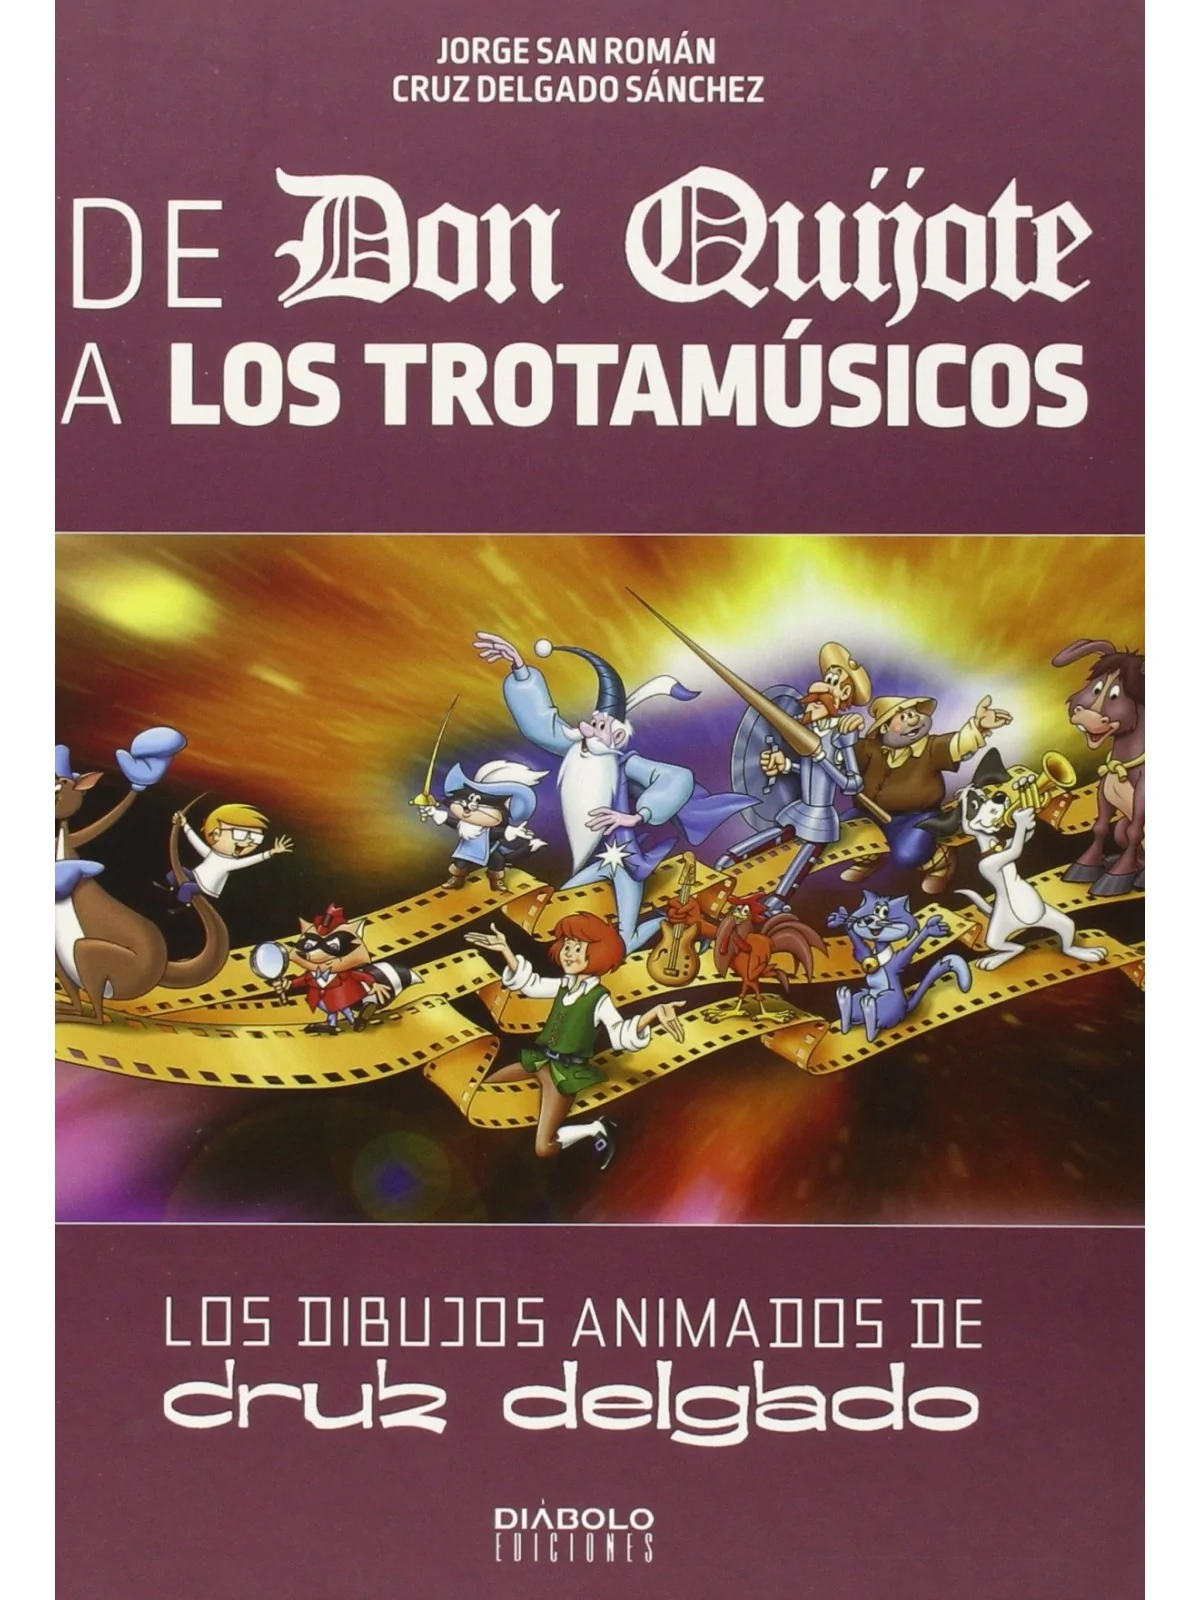 Comprar De Don Quijote a los Trotamusicos barato al mejor precio 22,75